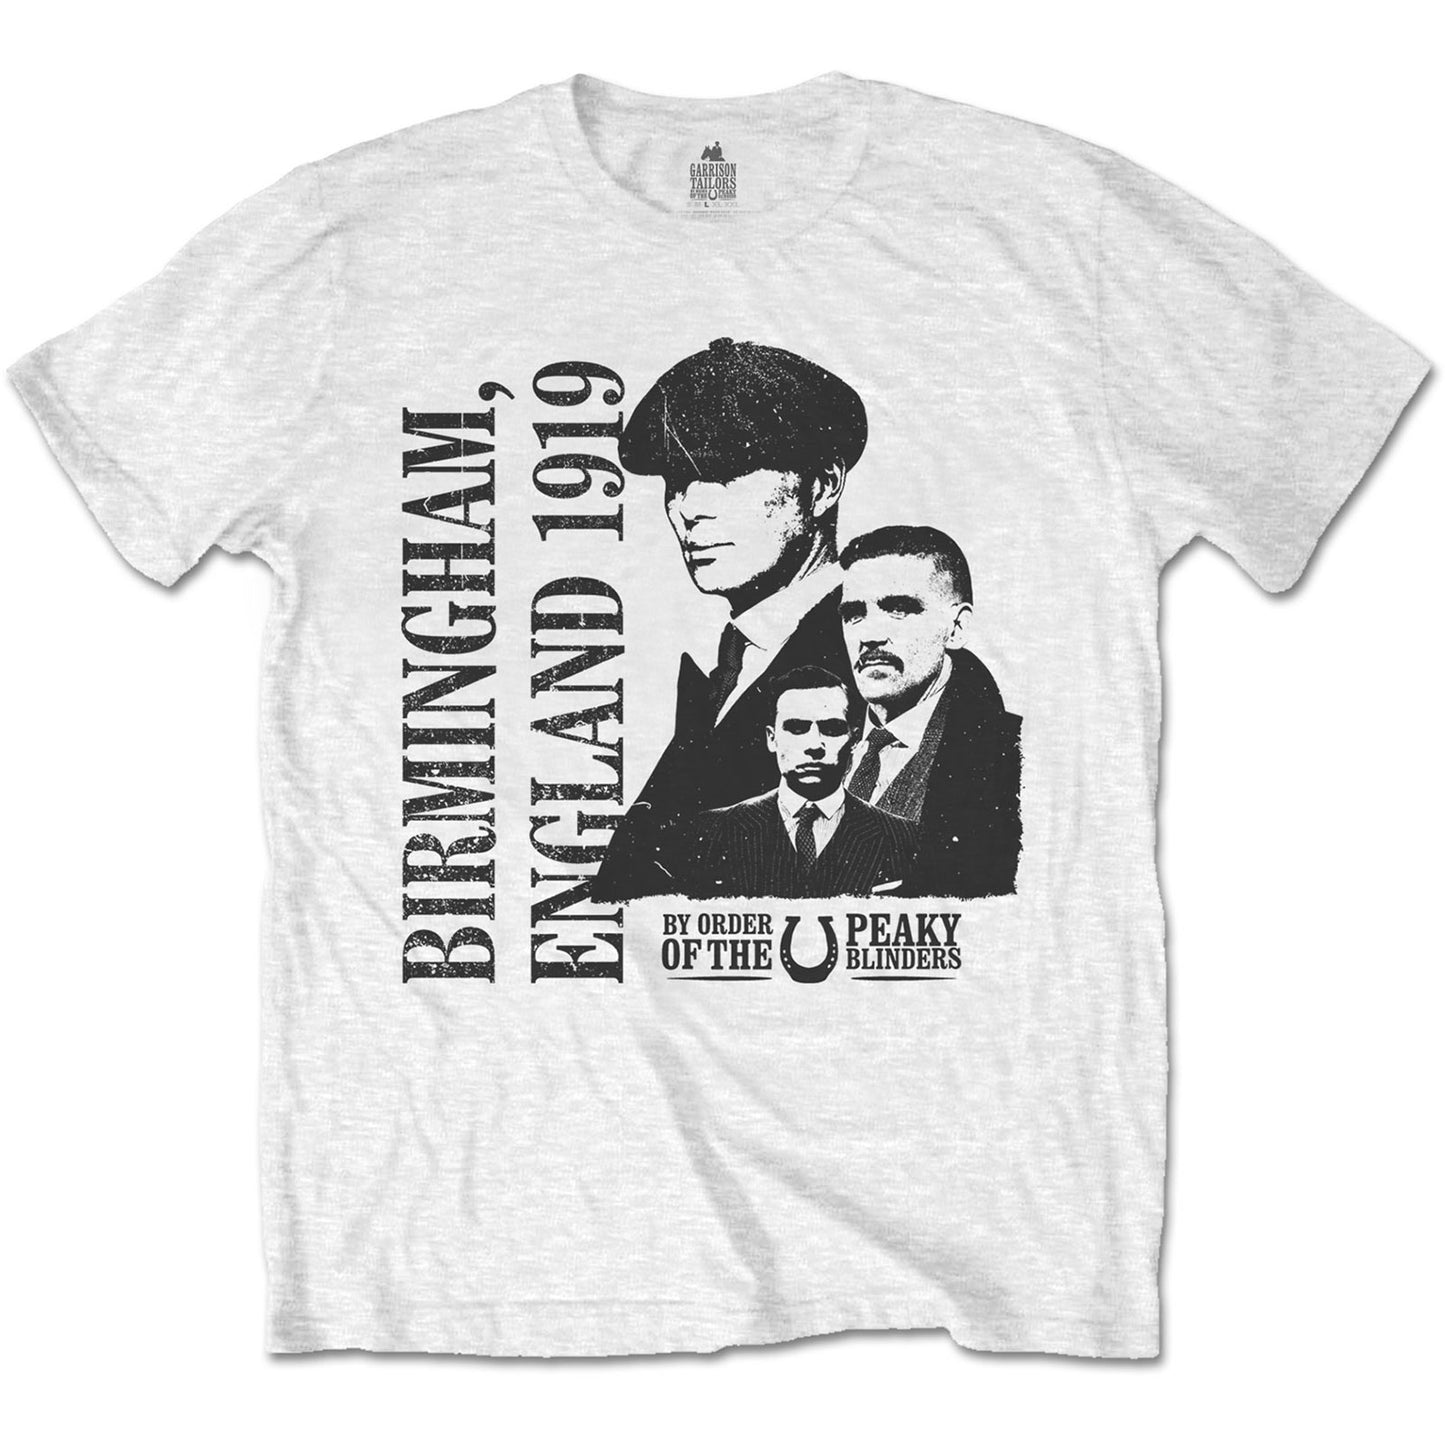 Peaky Blinders T-Shirt: England 1919